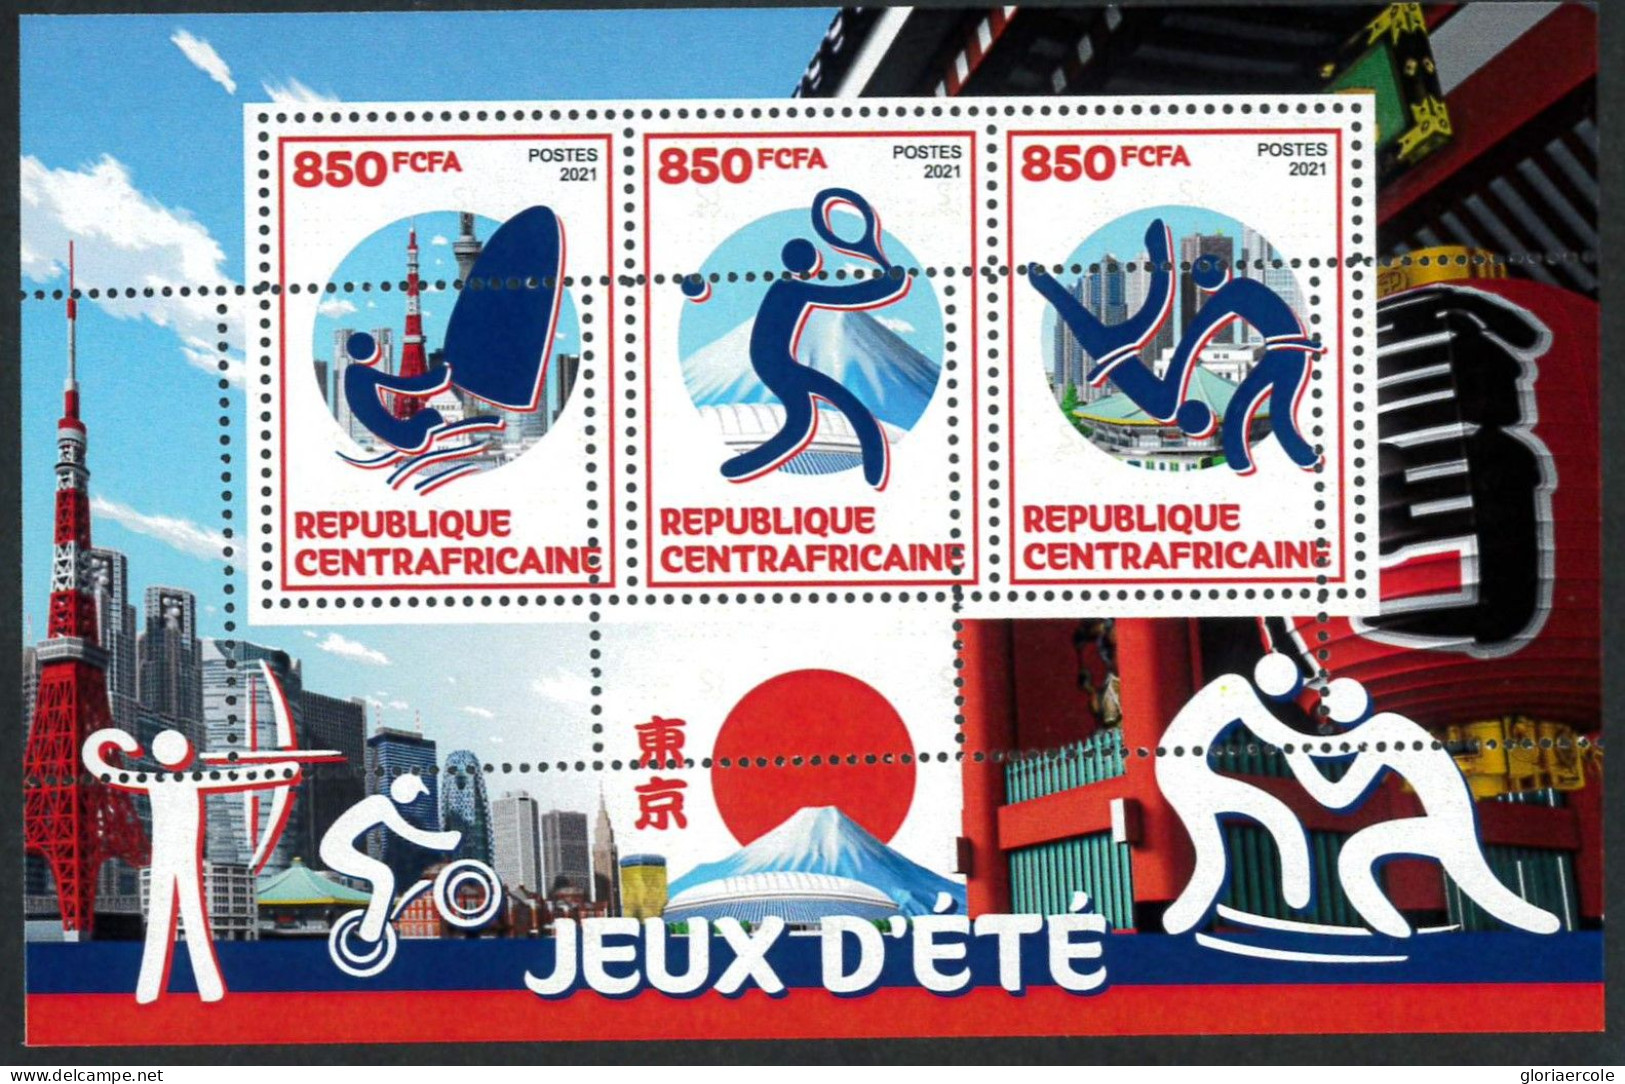 A7402 - CENTRAFRICAINE - ERROR MISPERF Stamp Sheet - 2021 - Sport TENNIS JUDO - Sommer 2020: Tokio